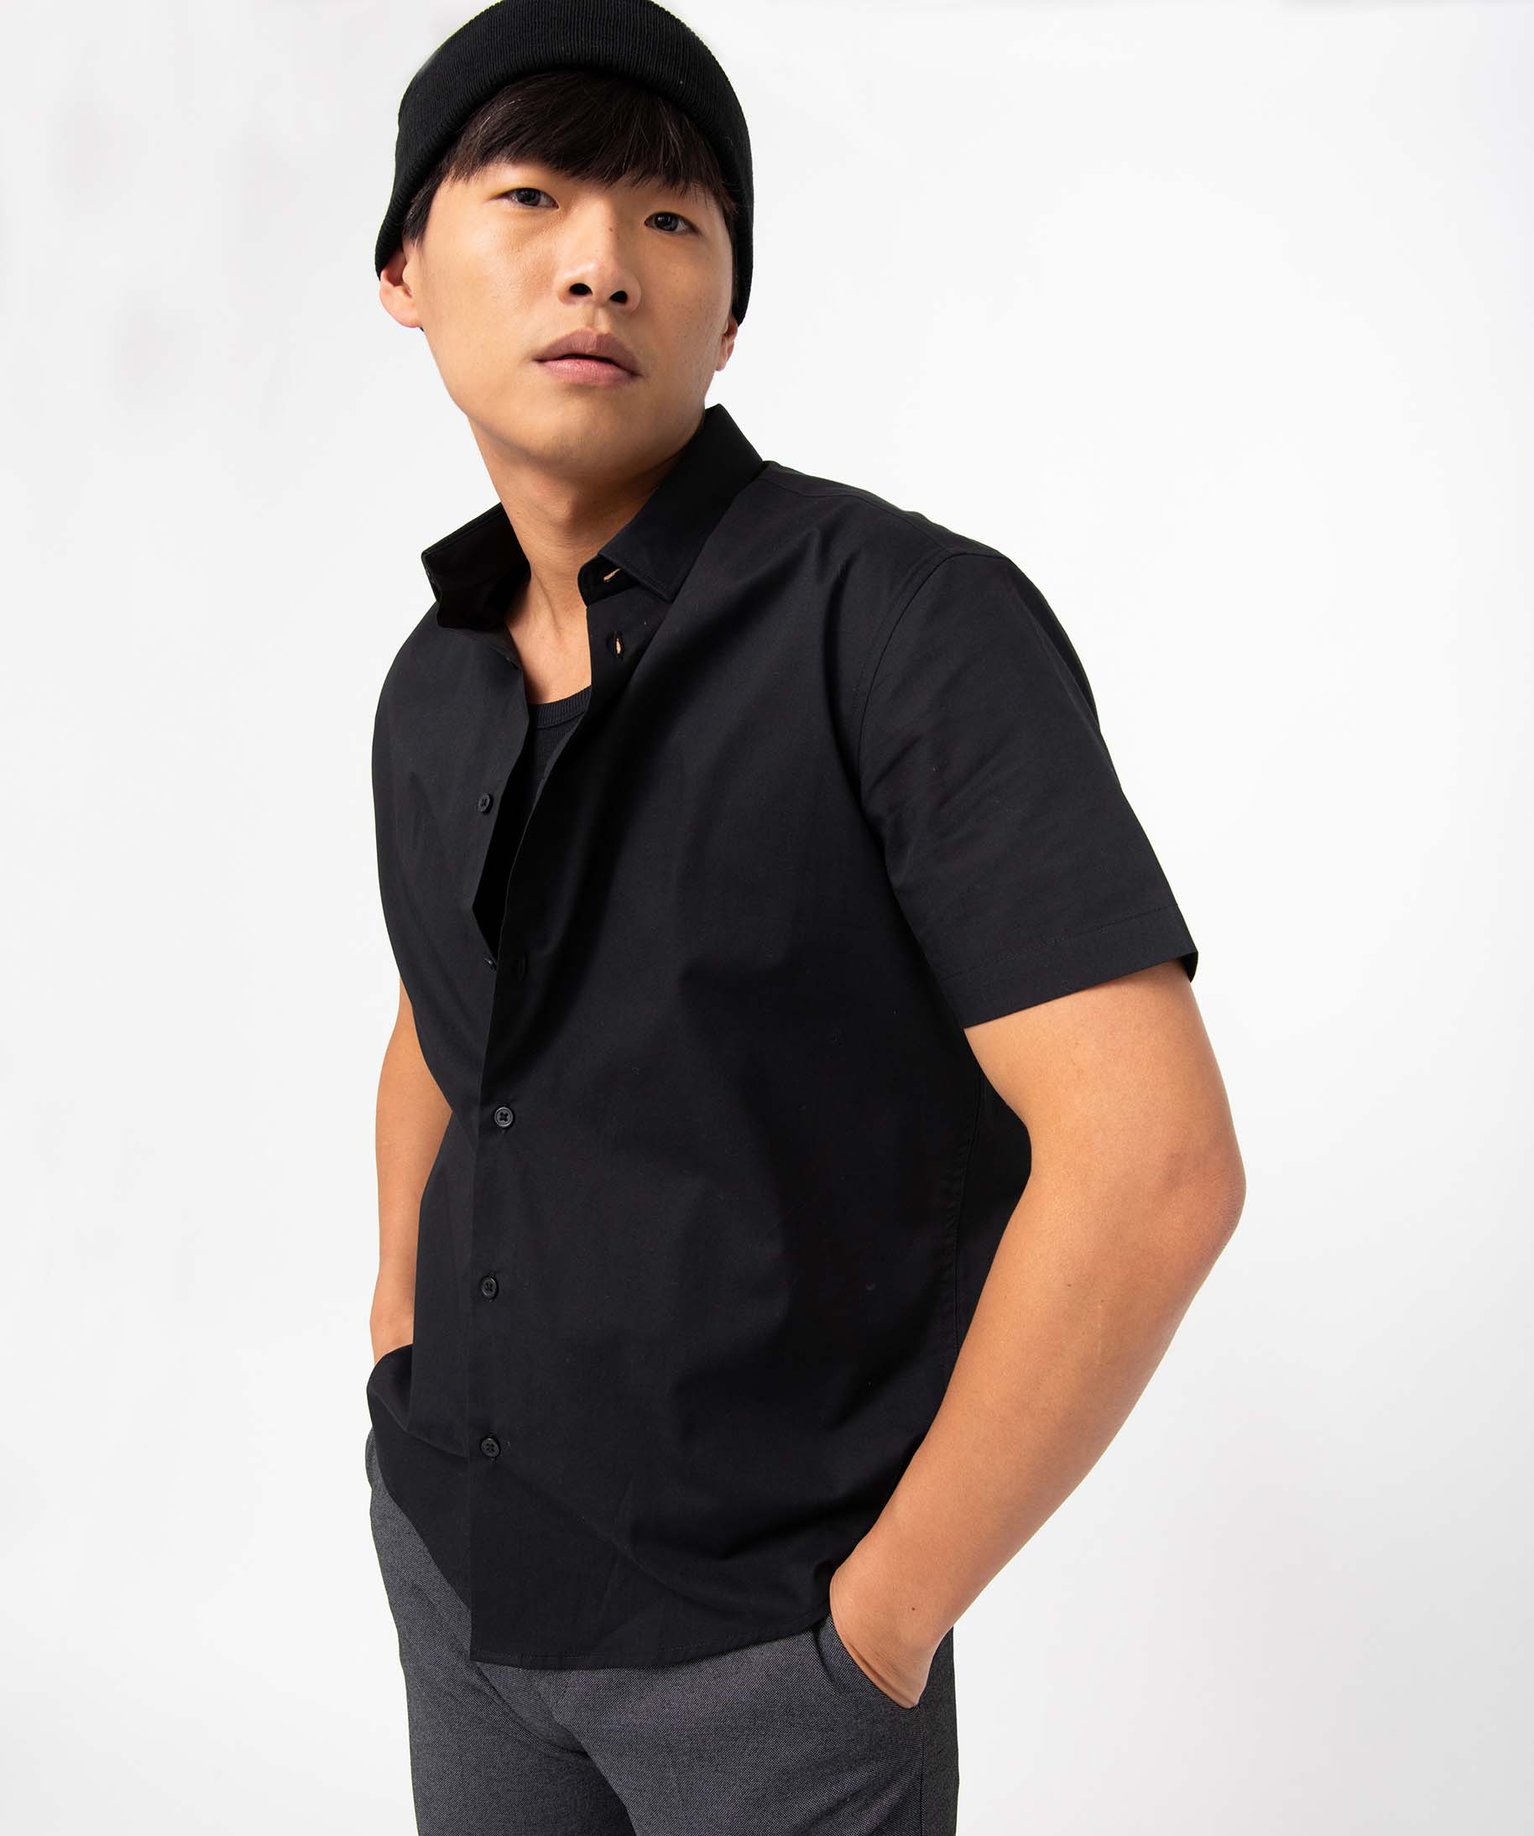 chemise homme a manches courtes coupe regular - repassage facile noir chemise manches courtes